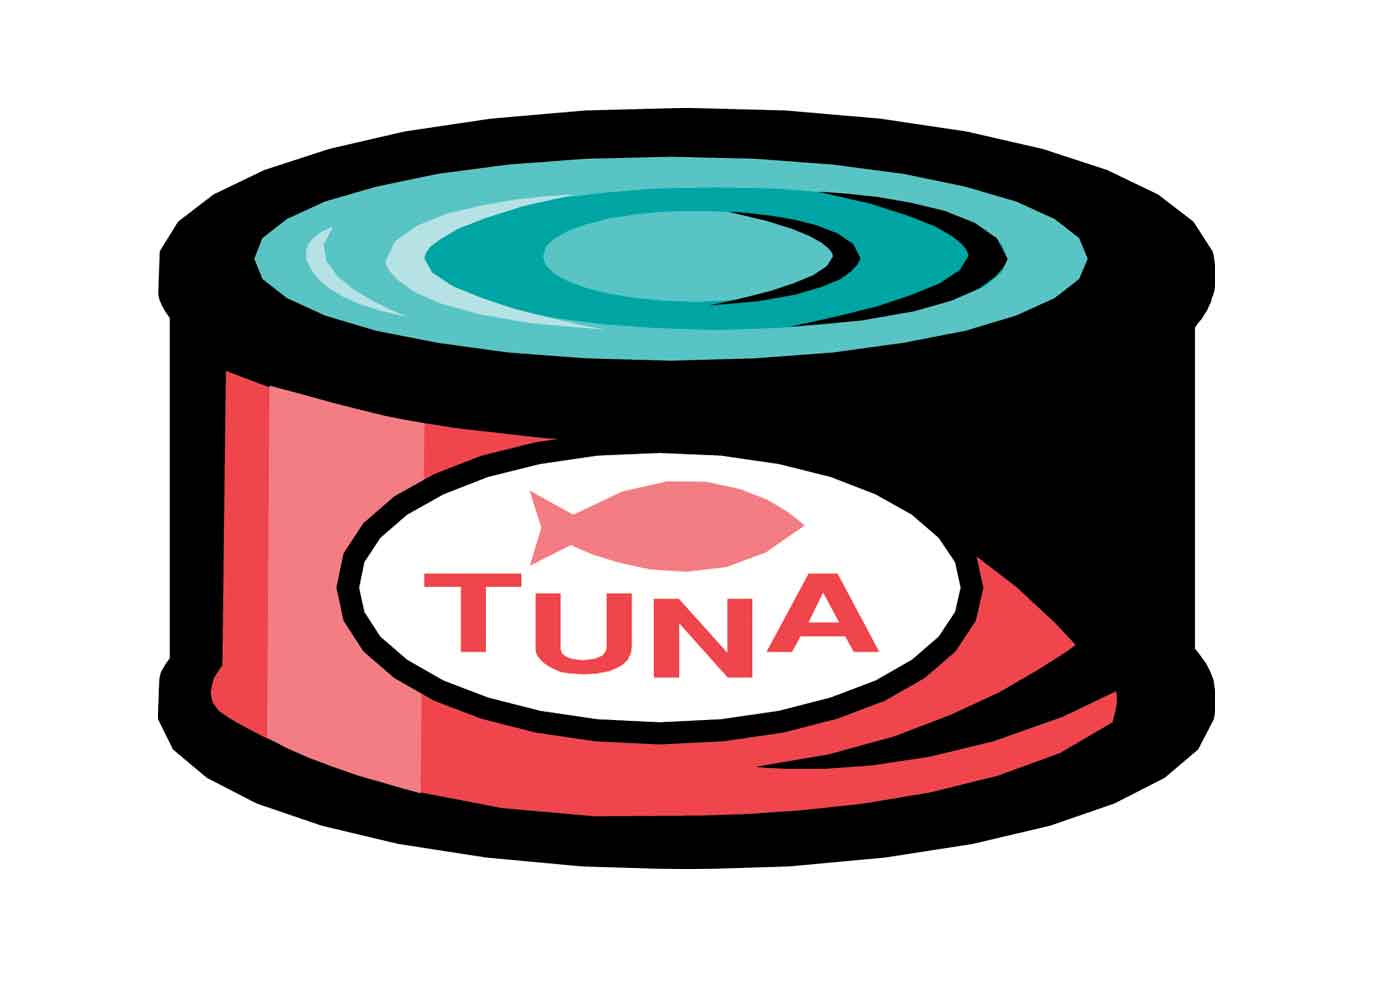 Tuna clipart tuna food. Free canned fish cliparts